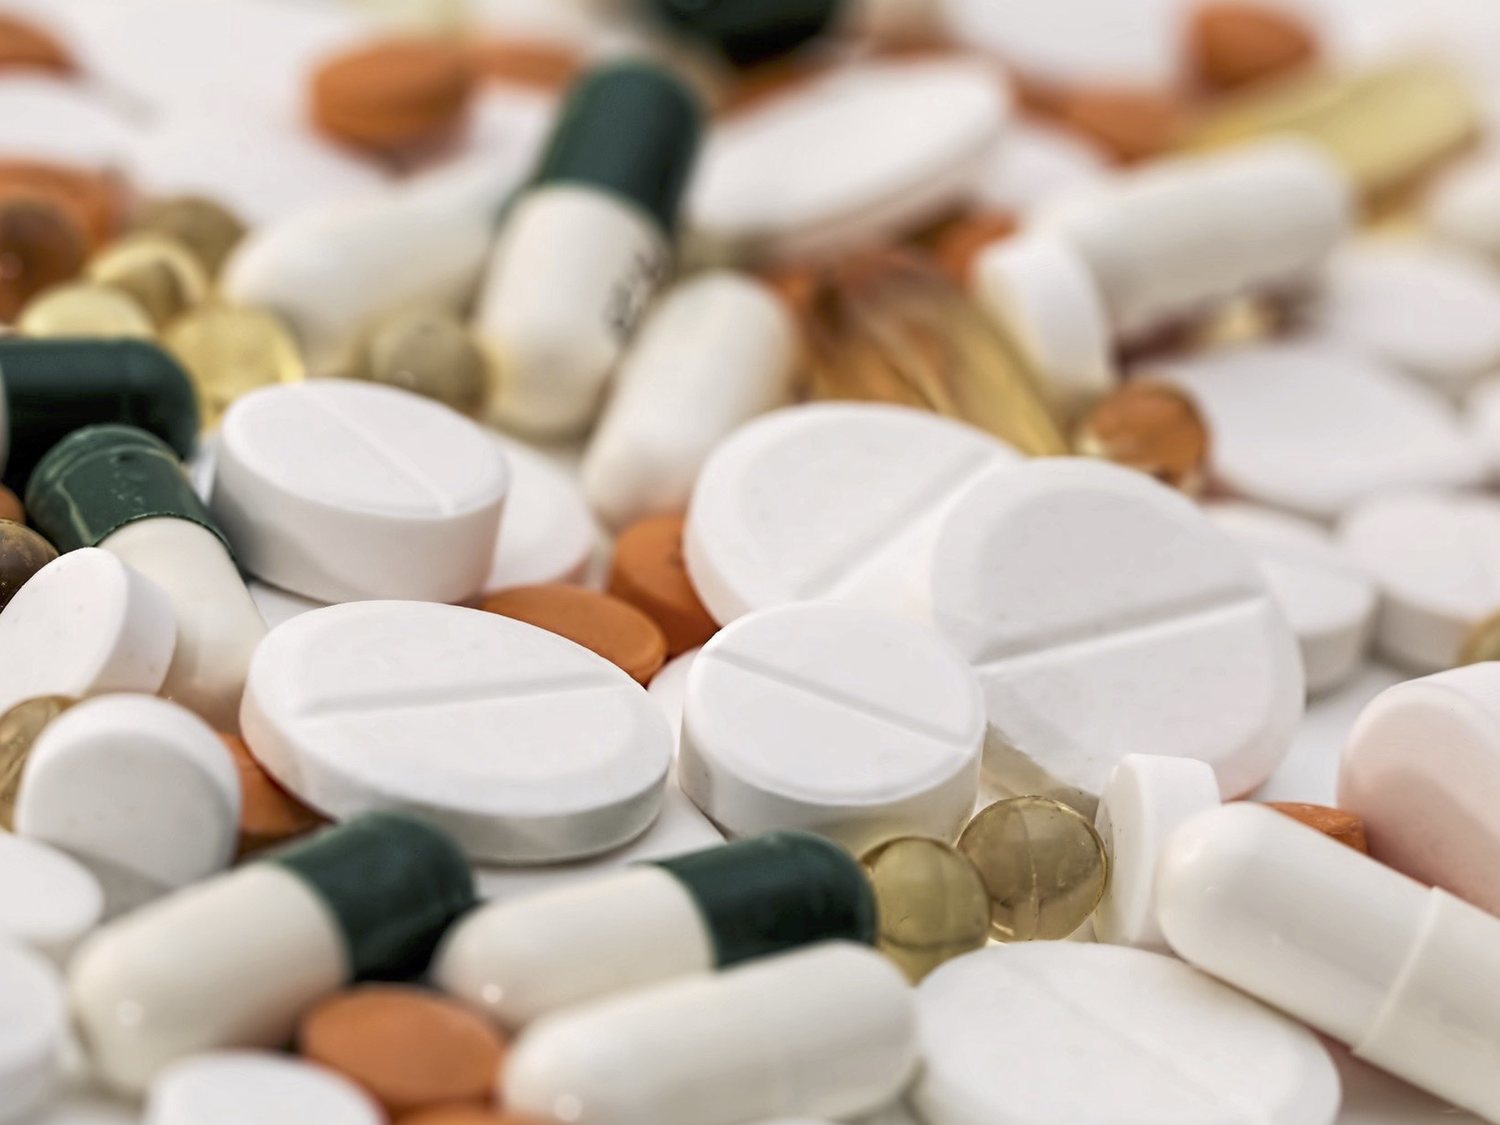 Alerta sanitaria: el Gobierno retira este medicamento sin receta y pide evitar su consumo